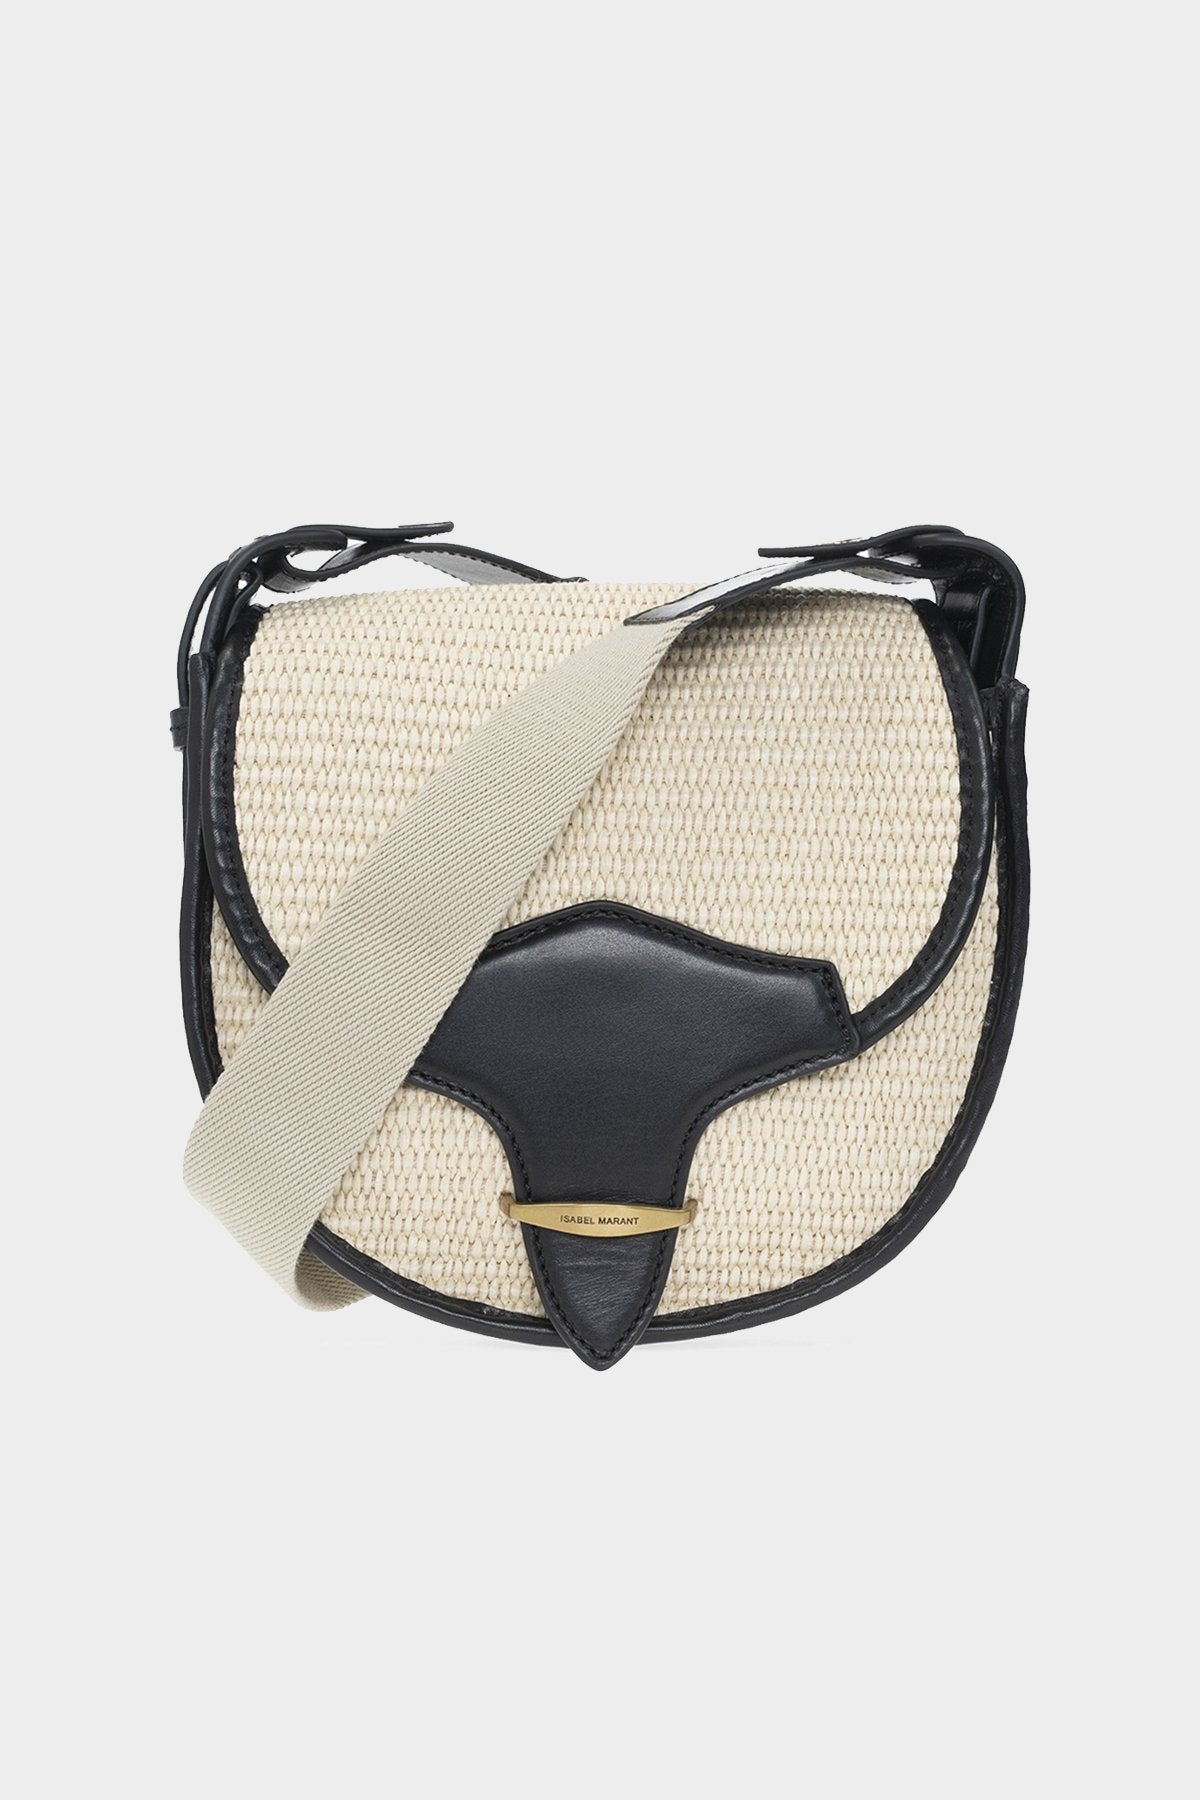 Botsy Shoulder Bag in Natural Black - shop-olivia.com